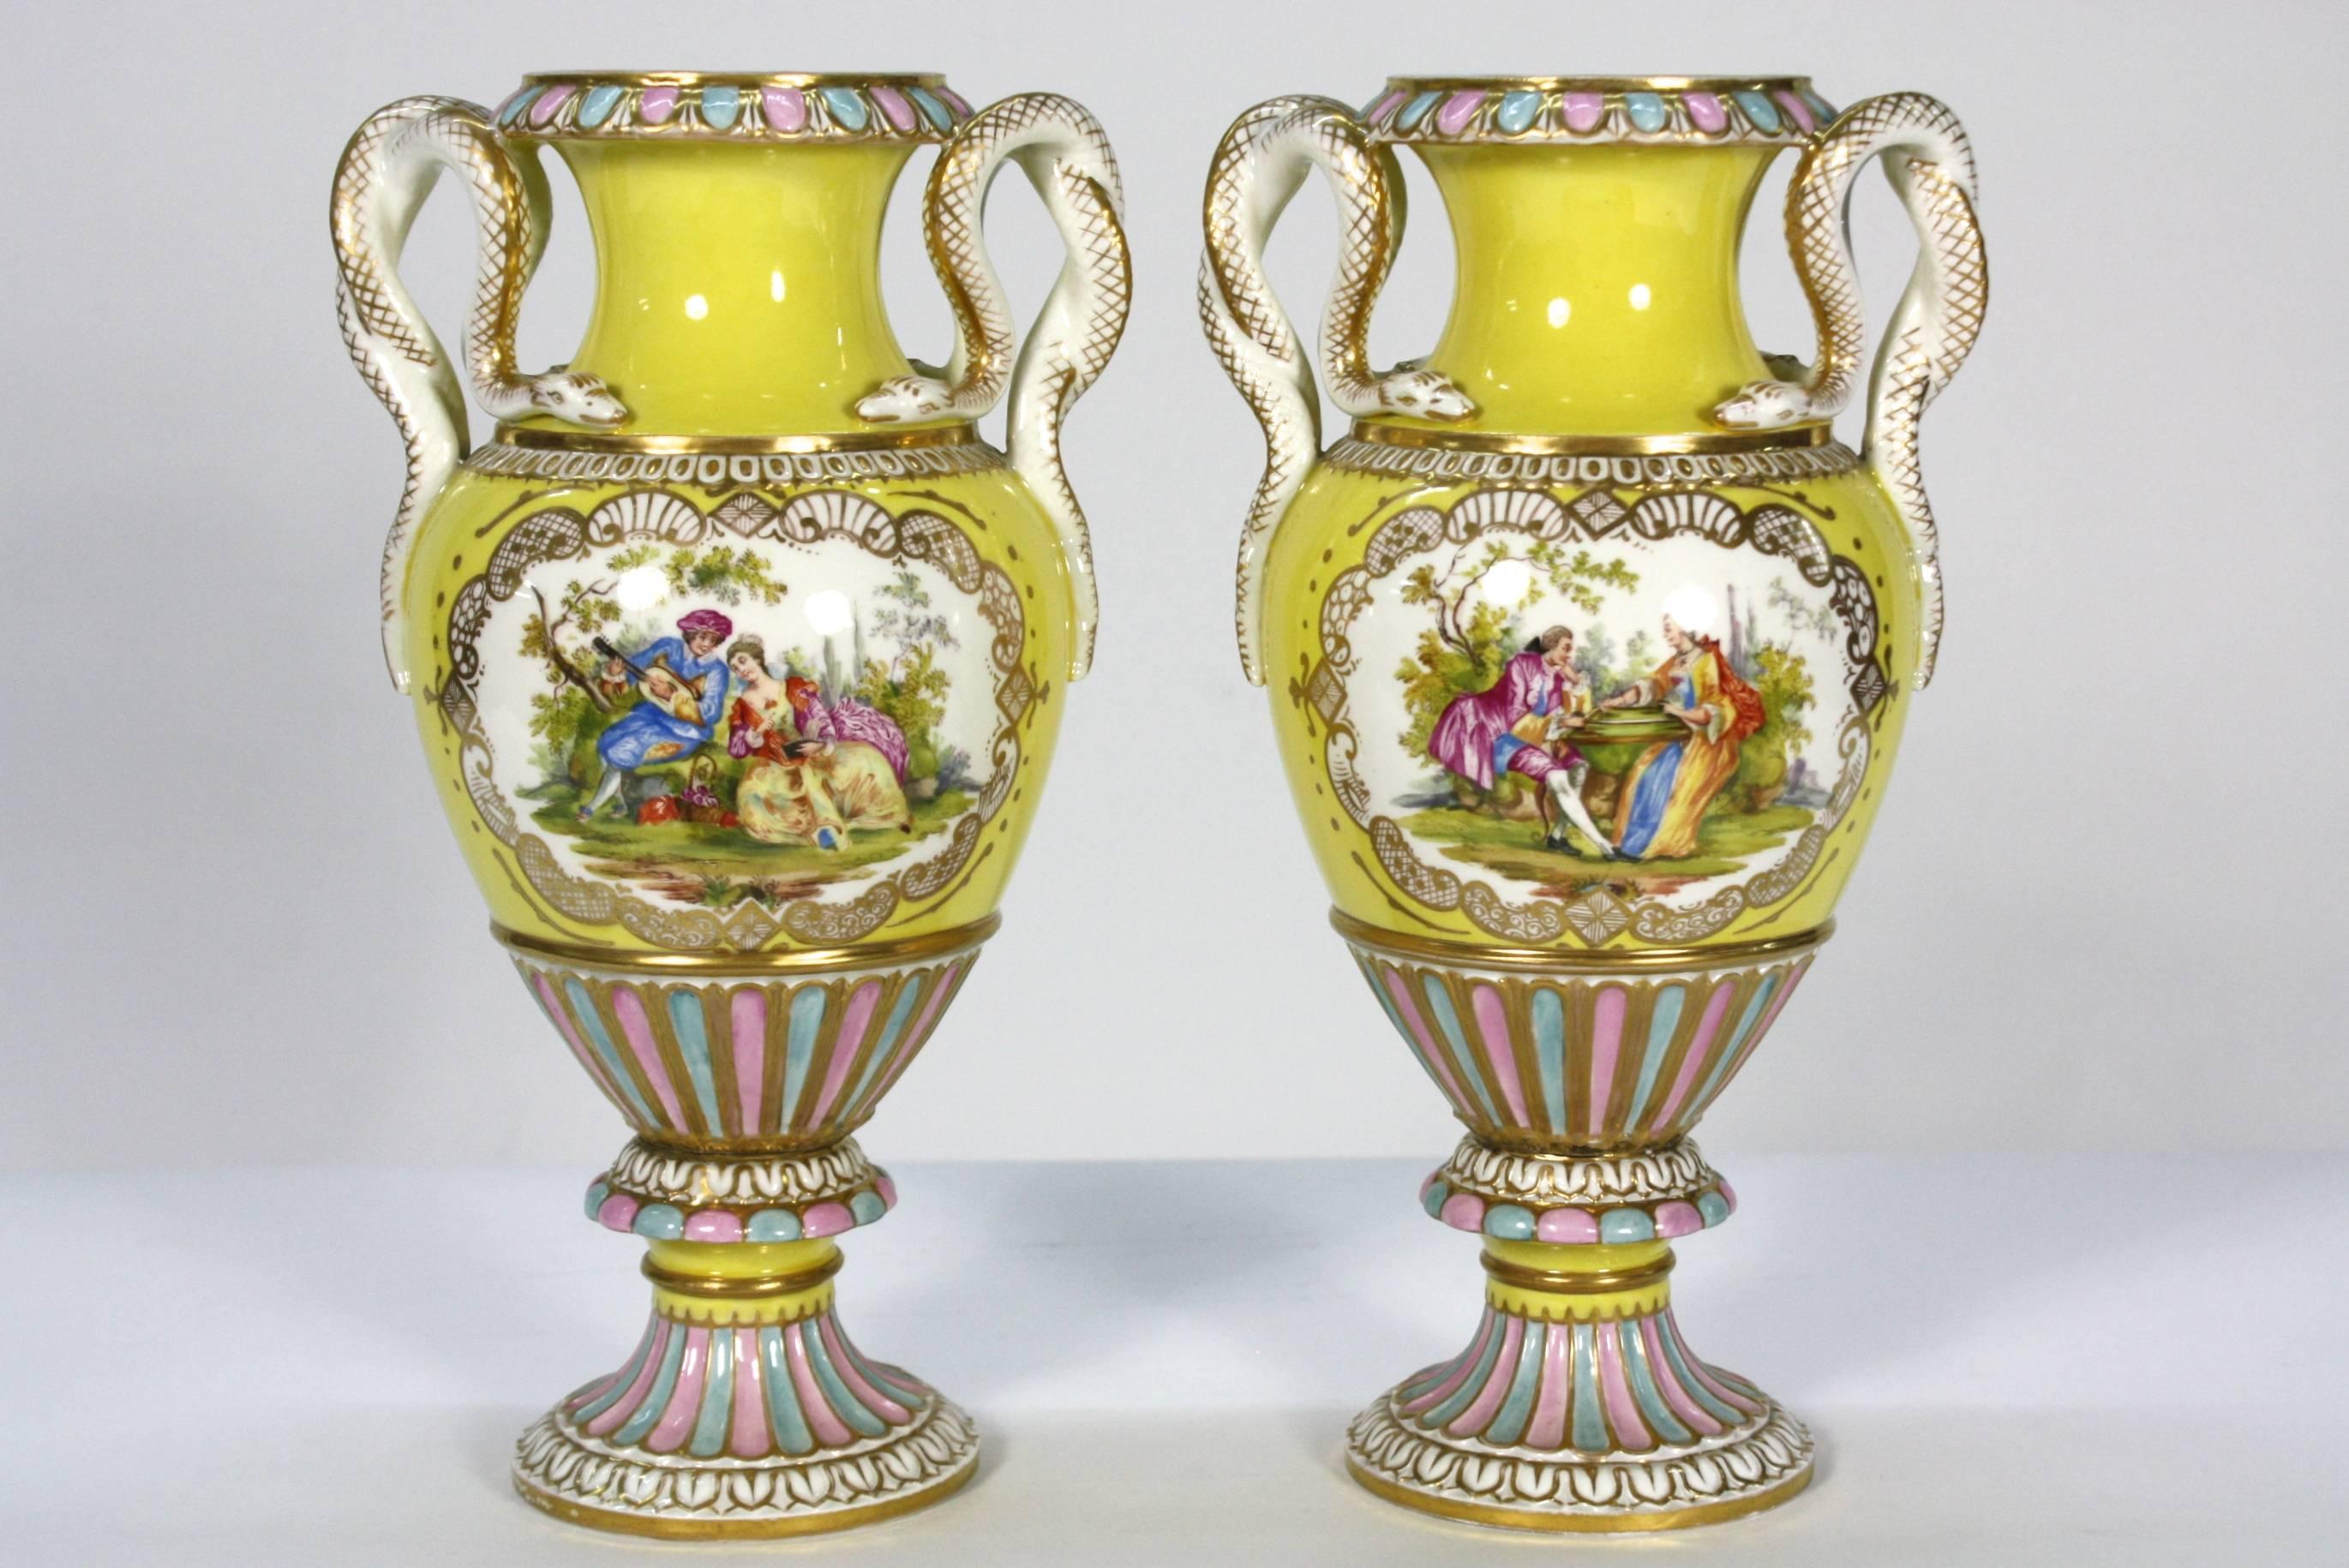 Ein hochdekoratives Paar gelber Porzellanvasen, handbemalt mit einer detaillierten romantischen Szene in der Mitte und mit Henkeln in Form einer Schlange (Meissen, 19. Jh.).